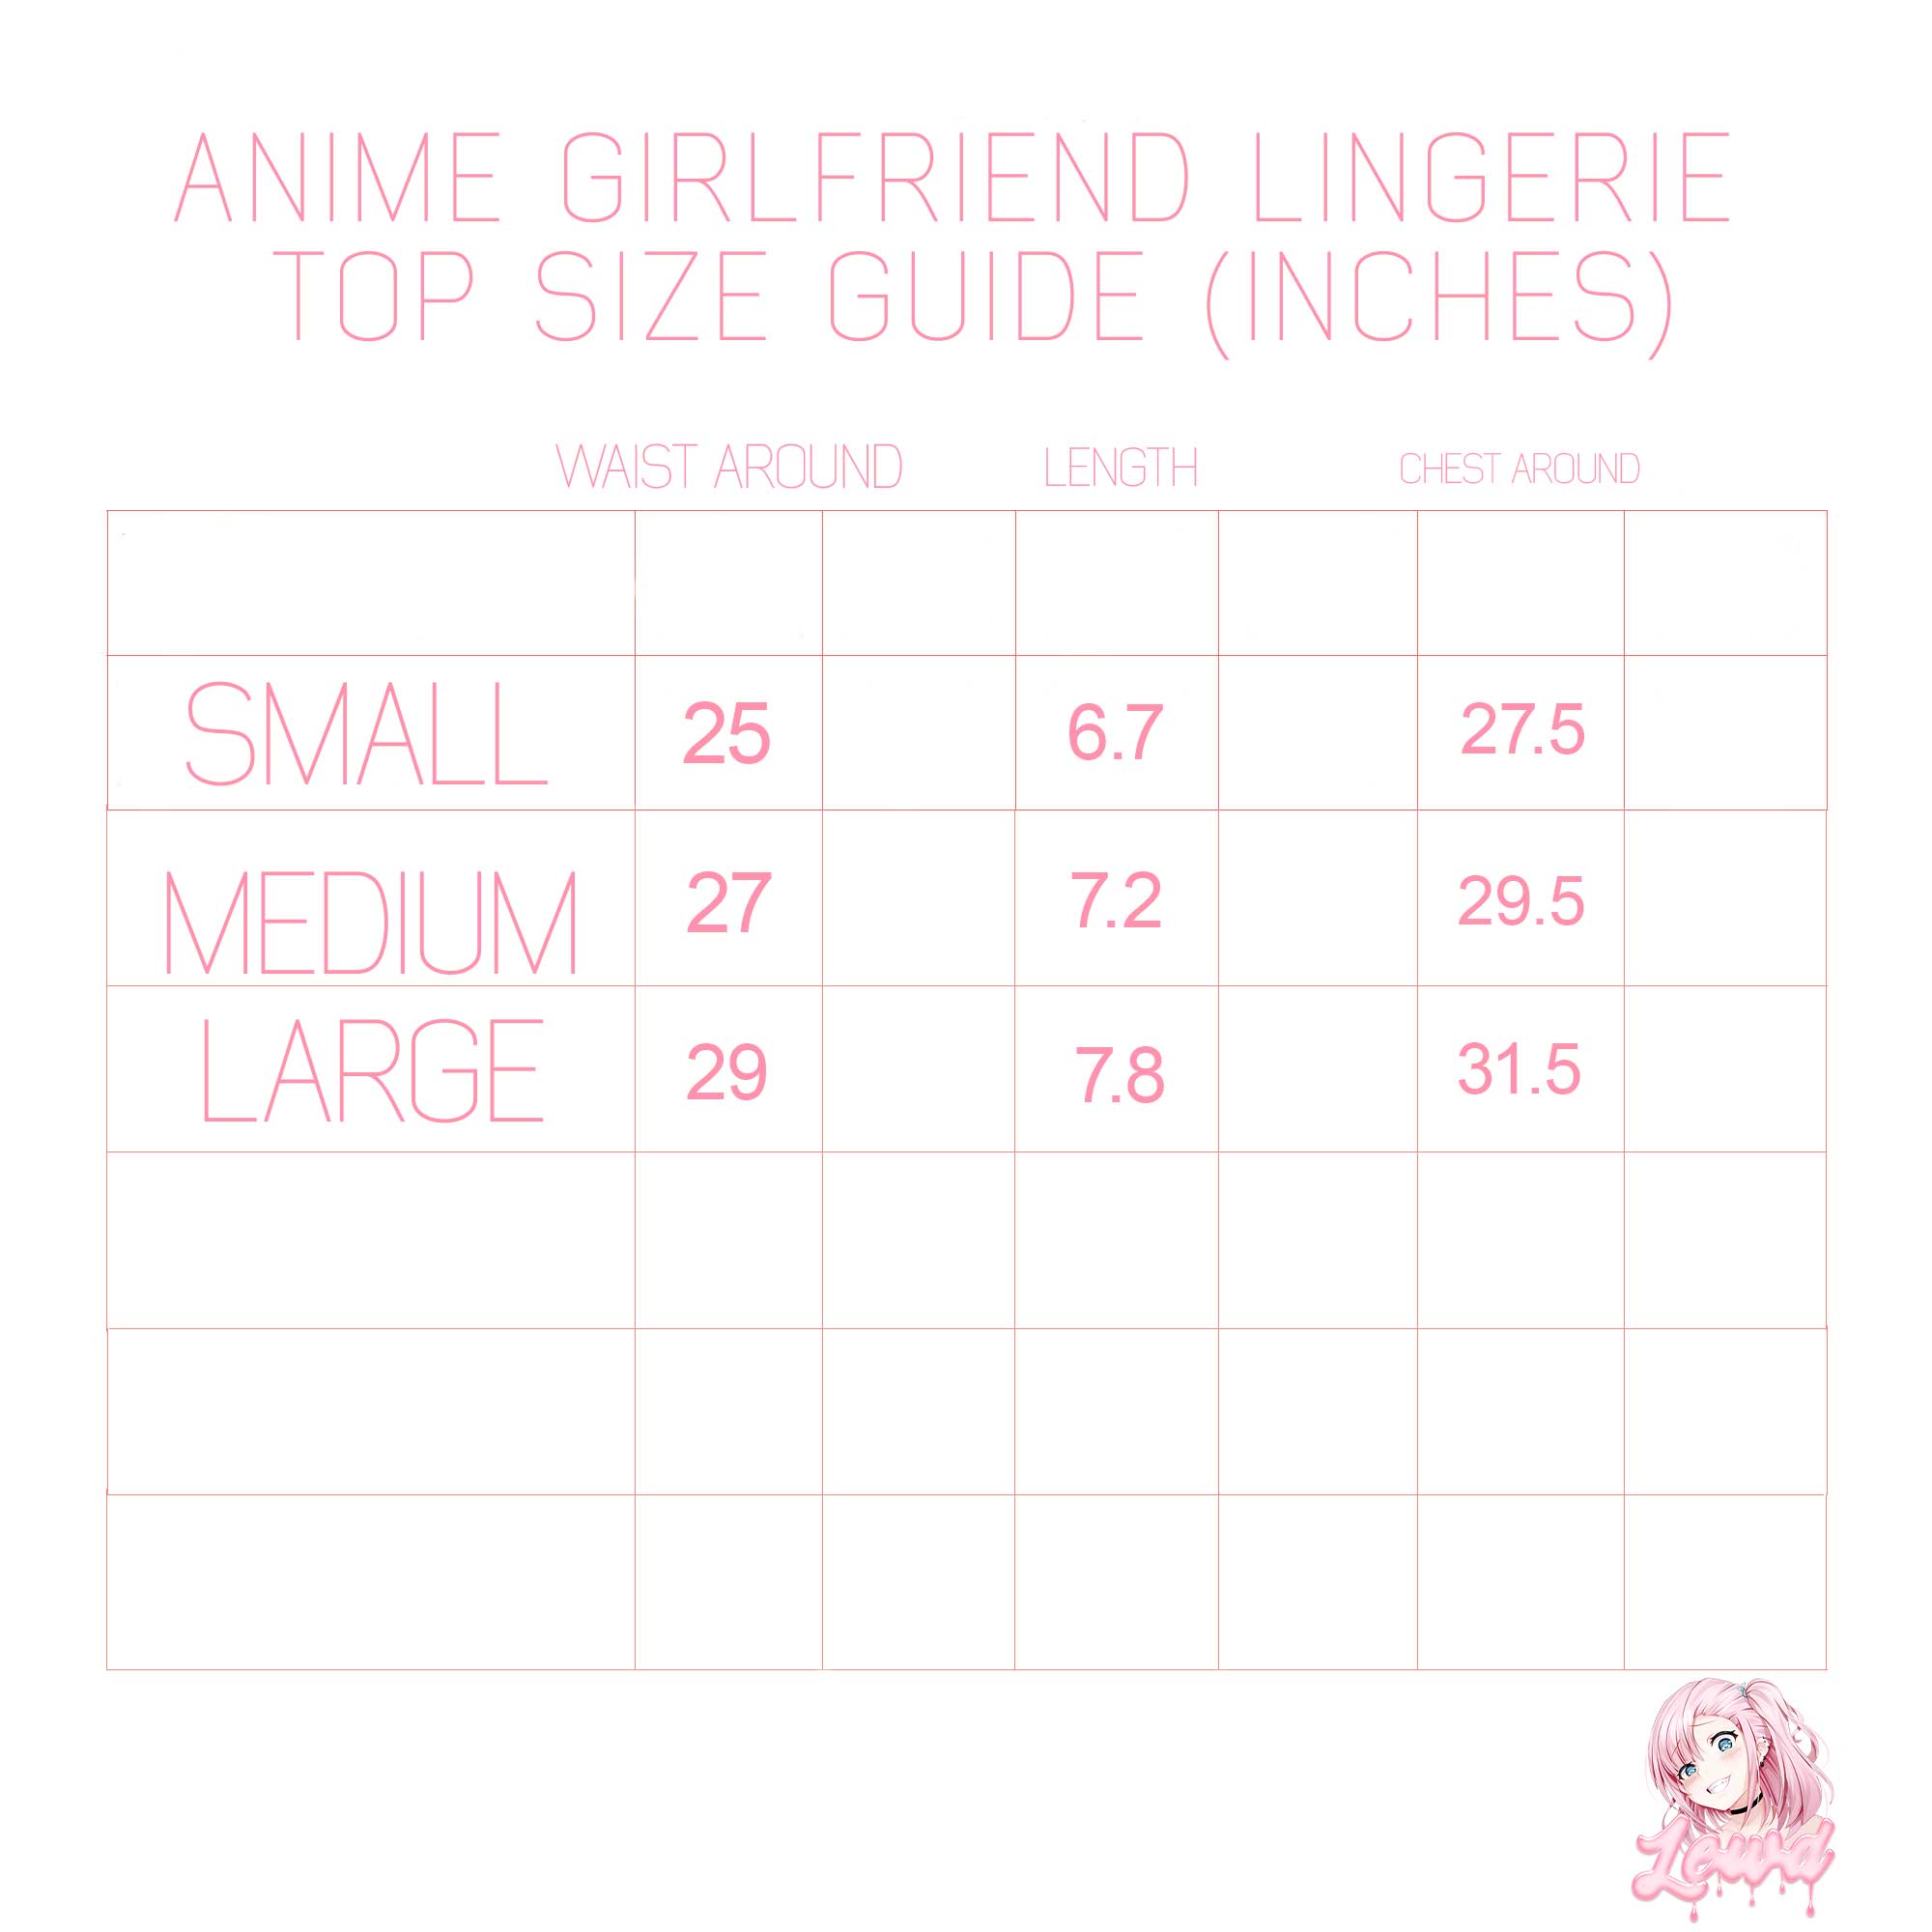 Anime Girl Lingerie